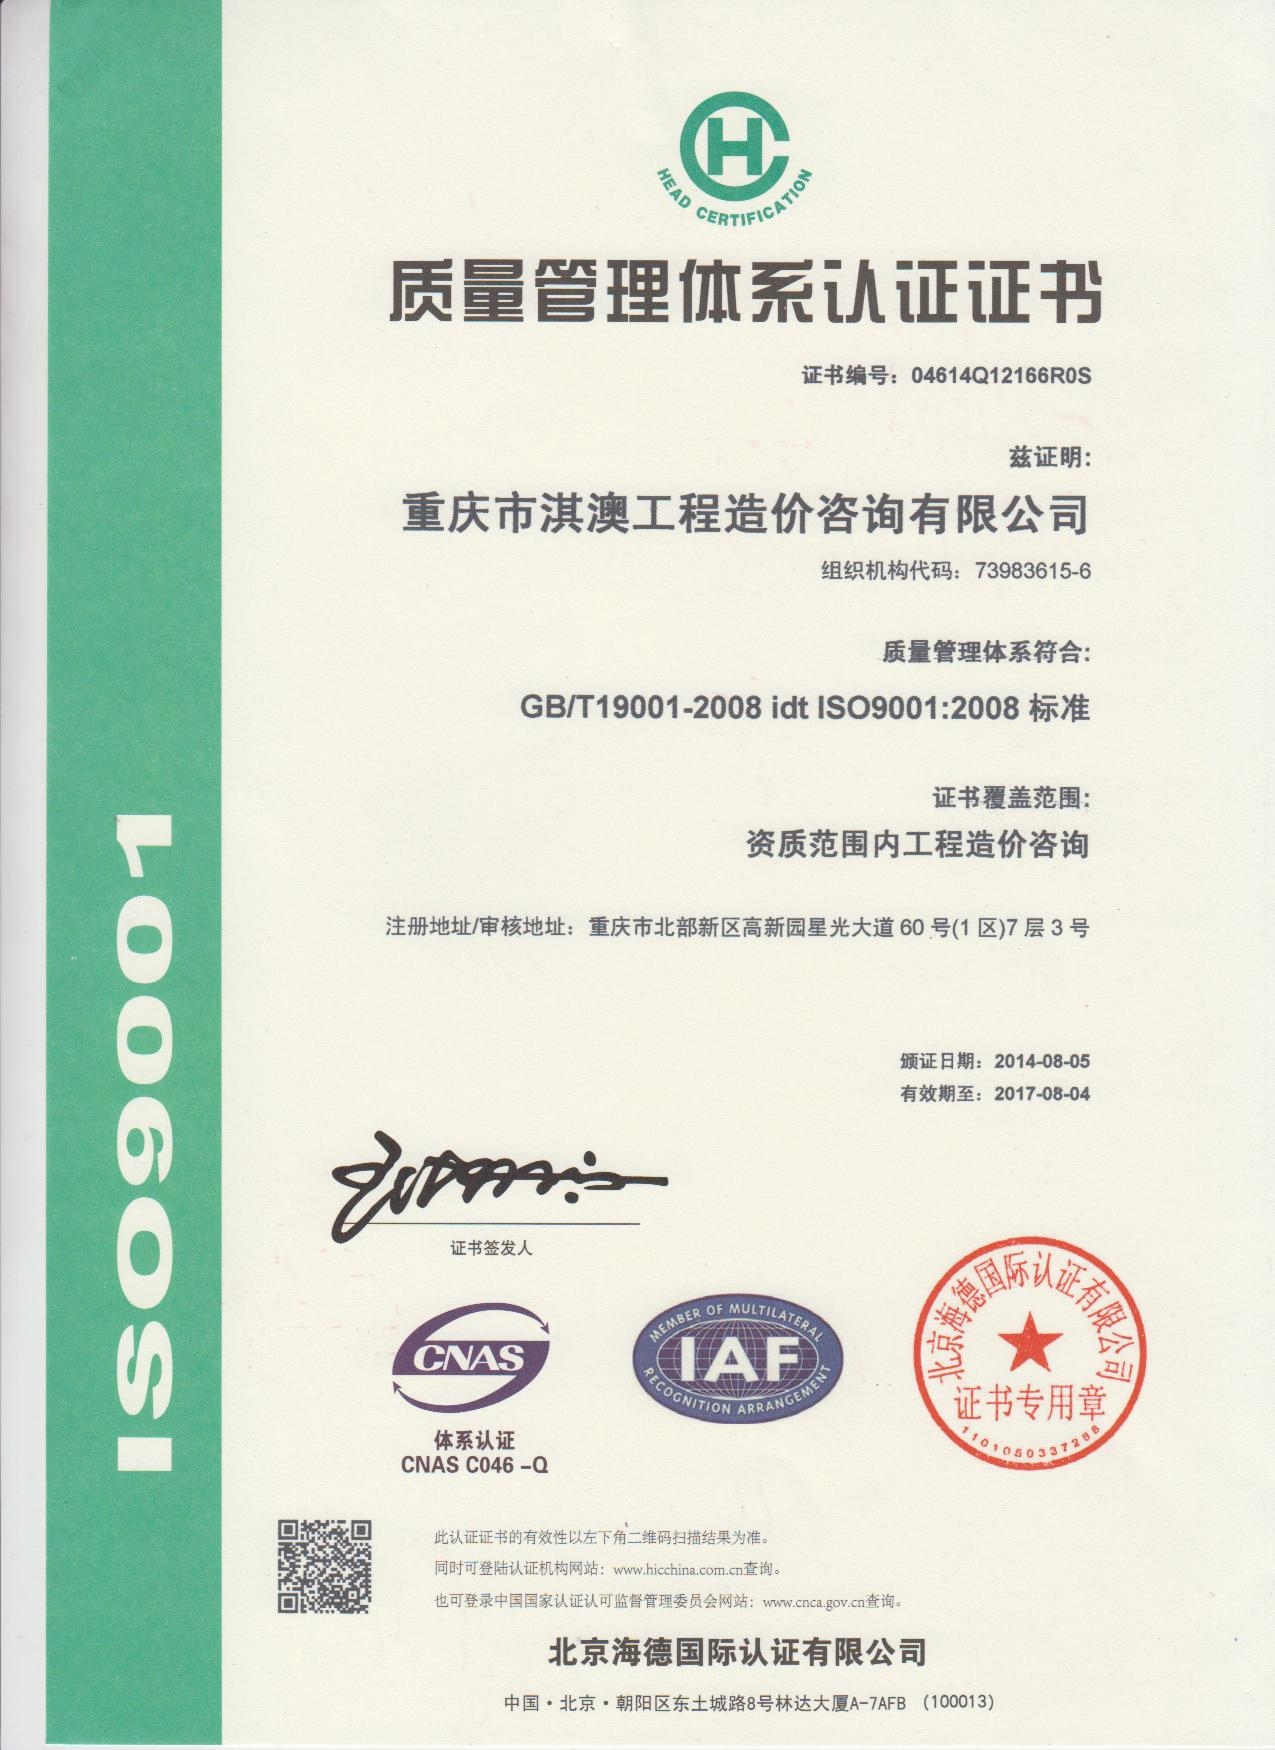 质量认证证书 中文.JPG